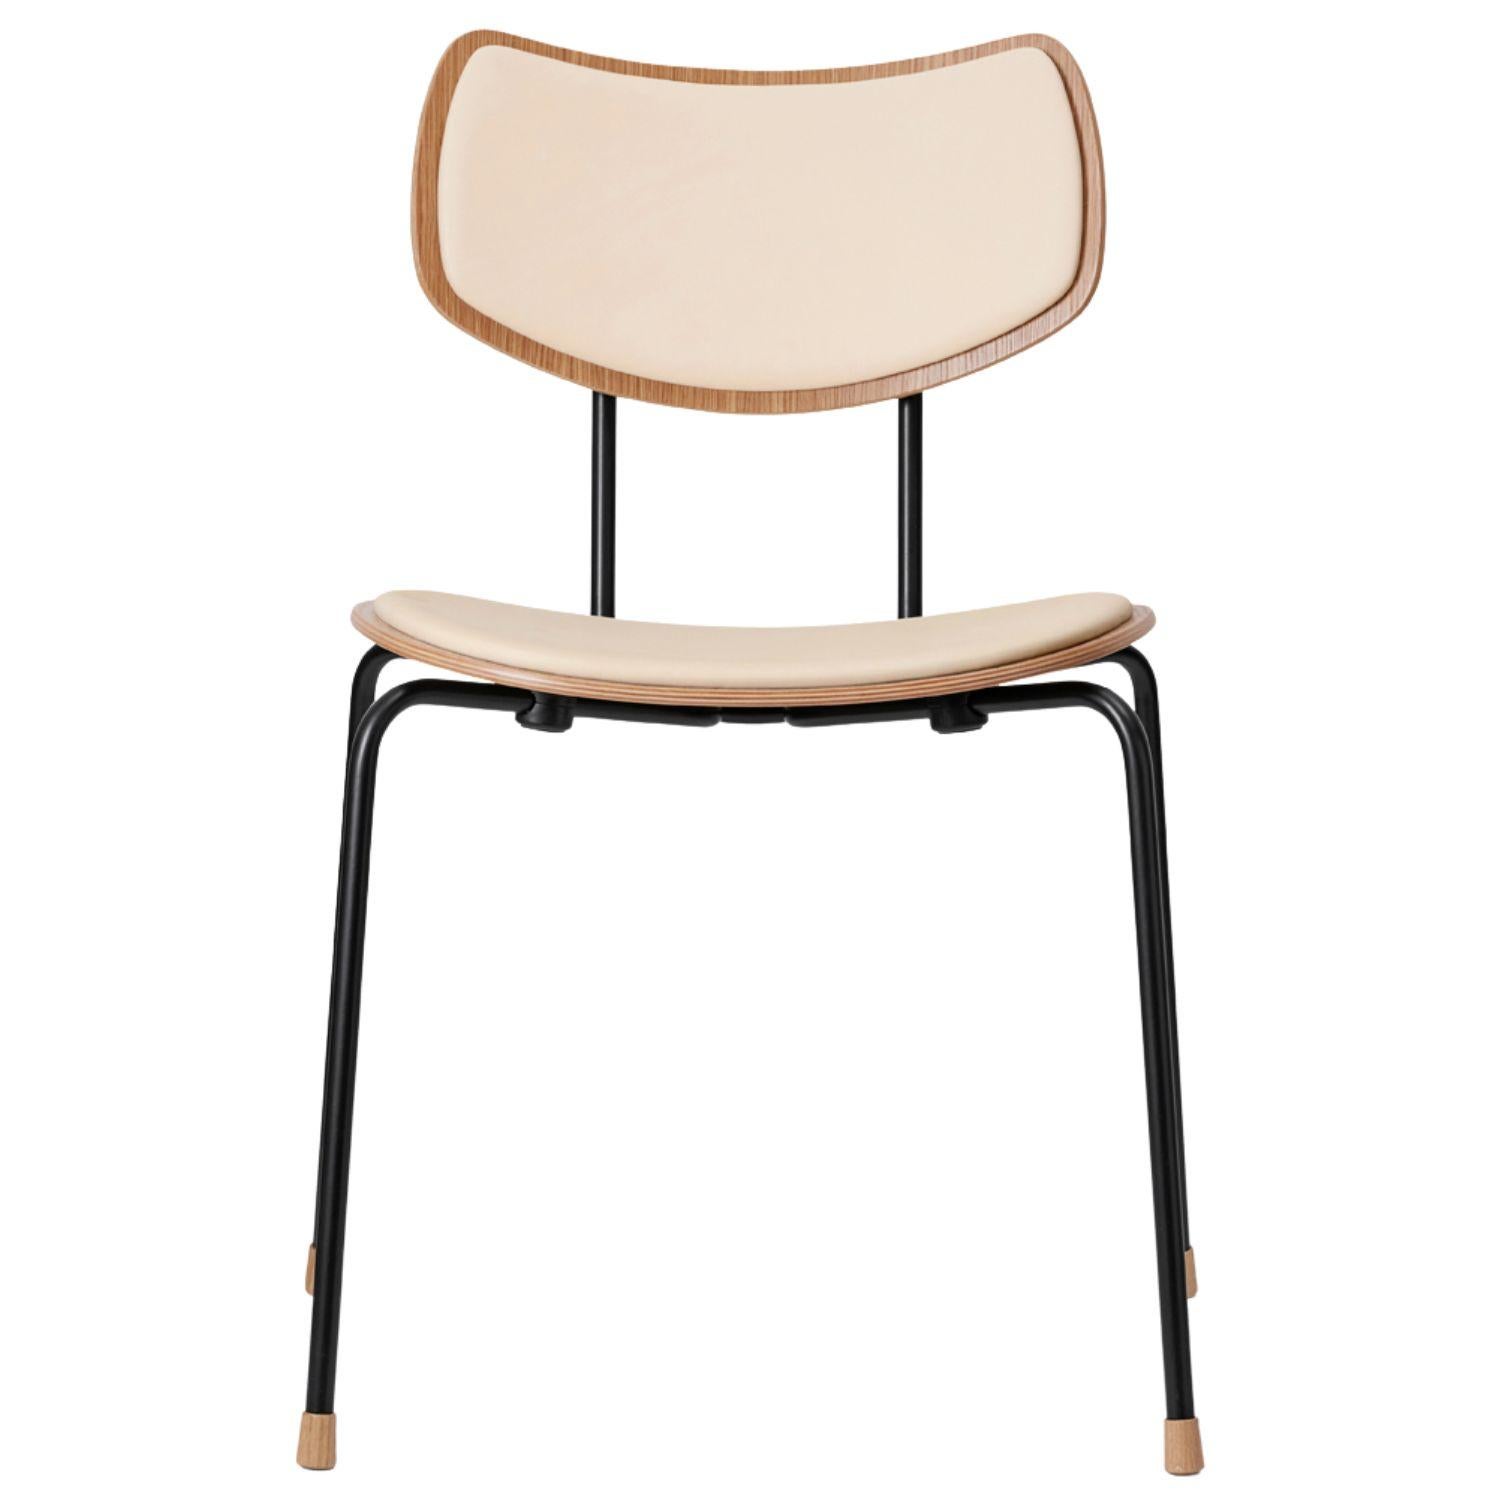 Vilhelm Lauritzen 'VLA26 Vega' Chair in Oak Chrome and Oil for Carl Hansen & Son For Sale 7